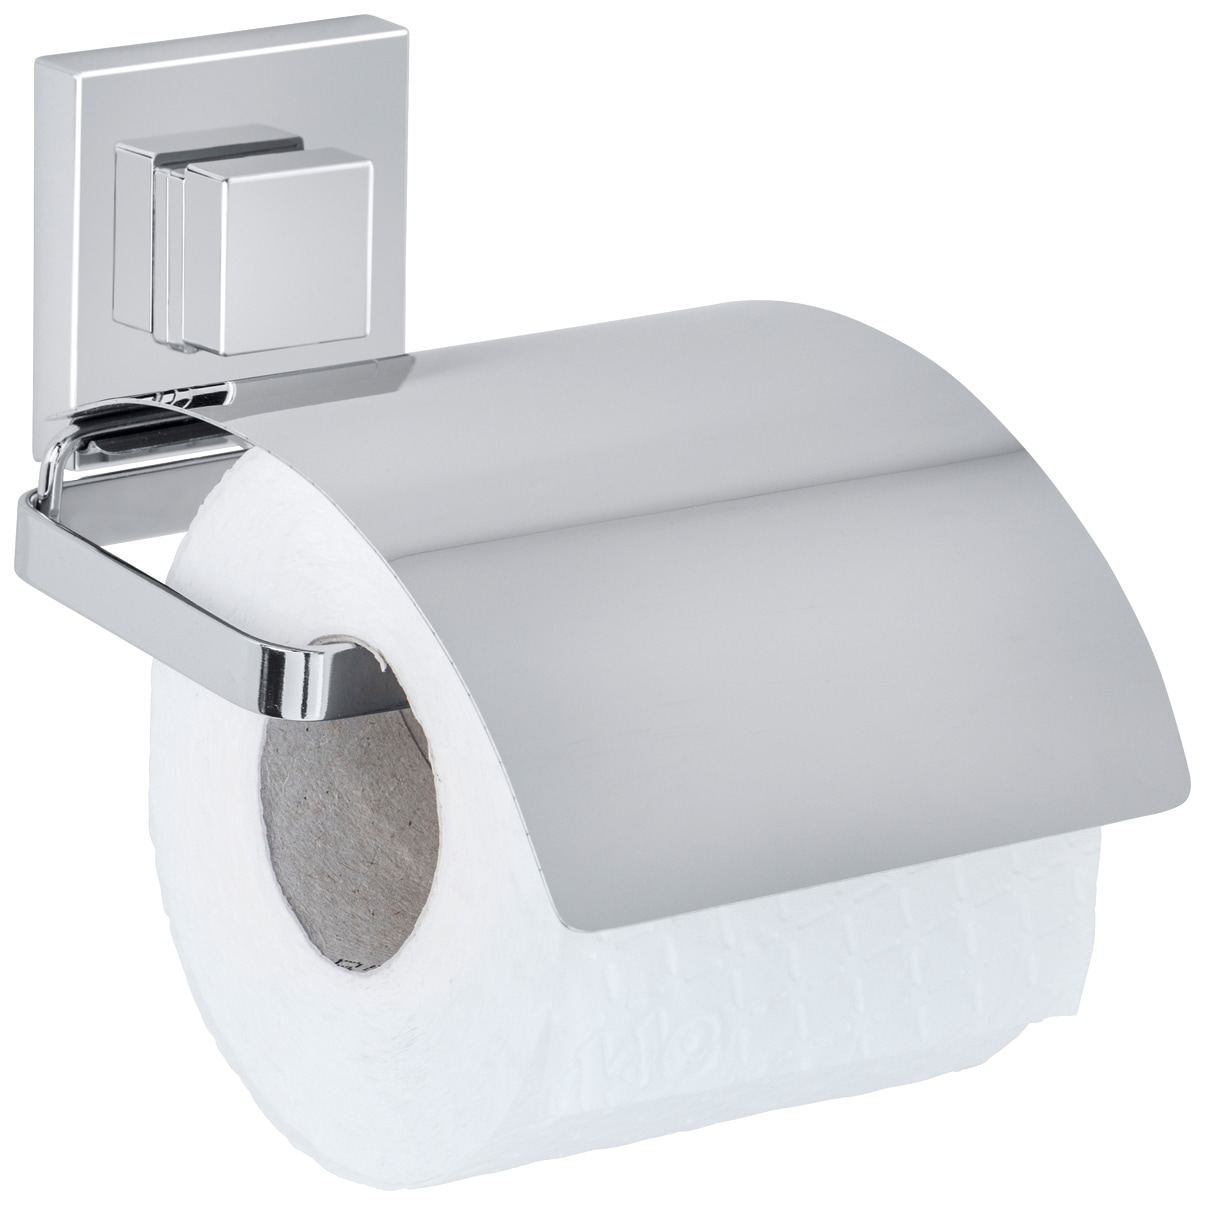 Toilettenpapierhalter preiswert kaufen